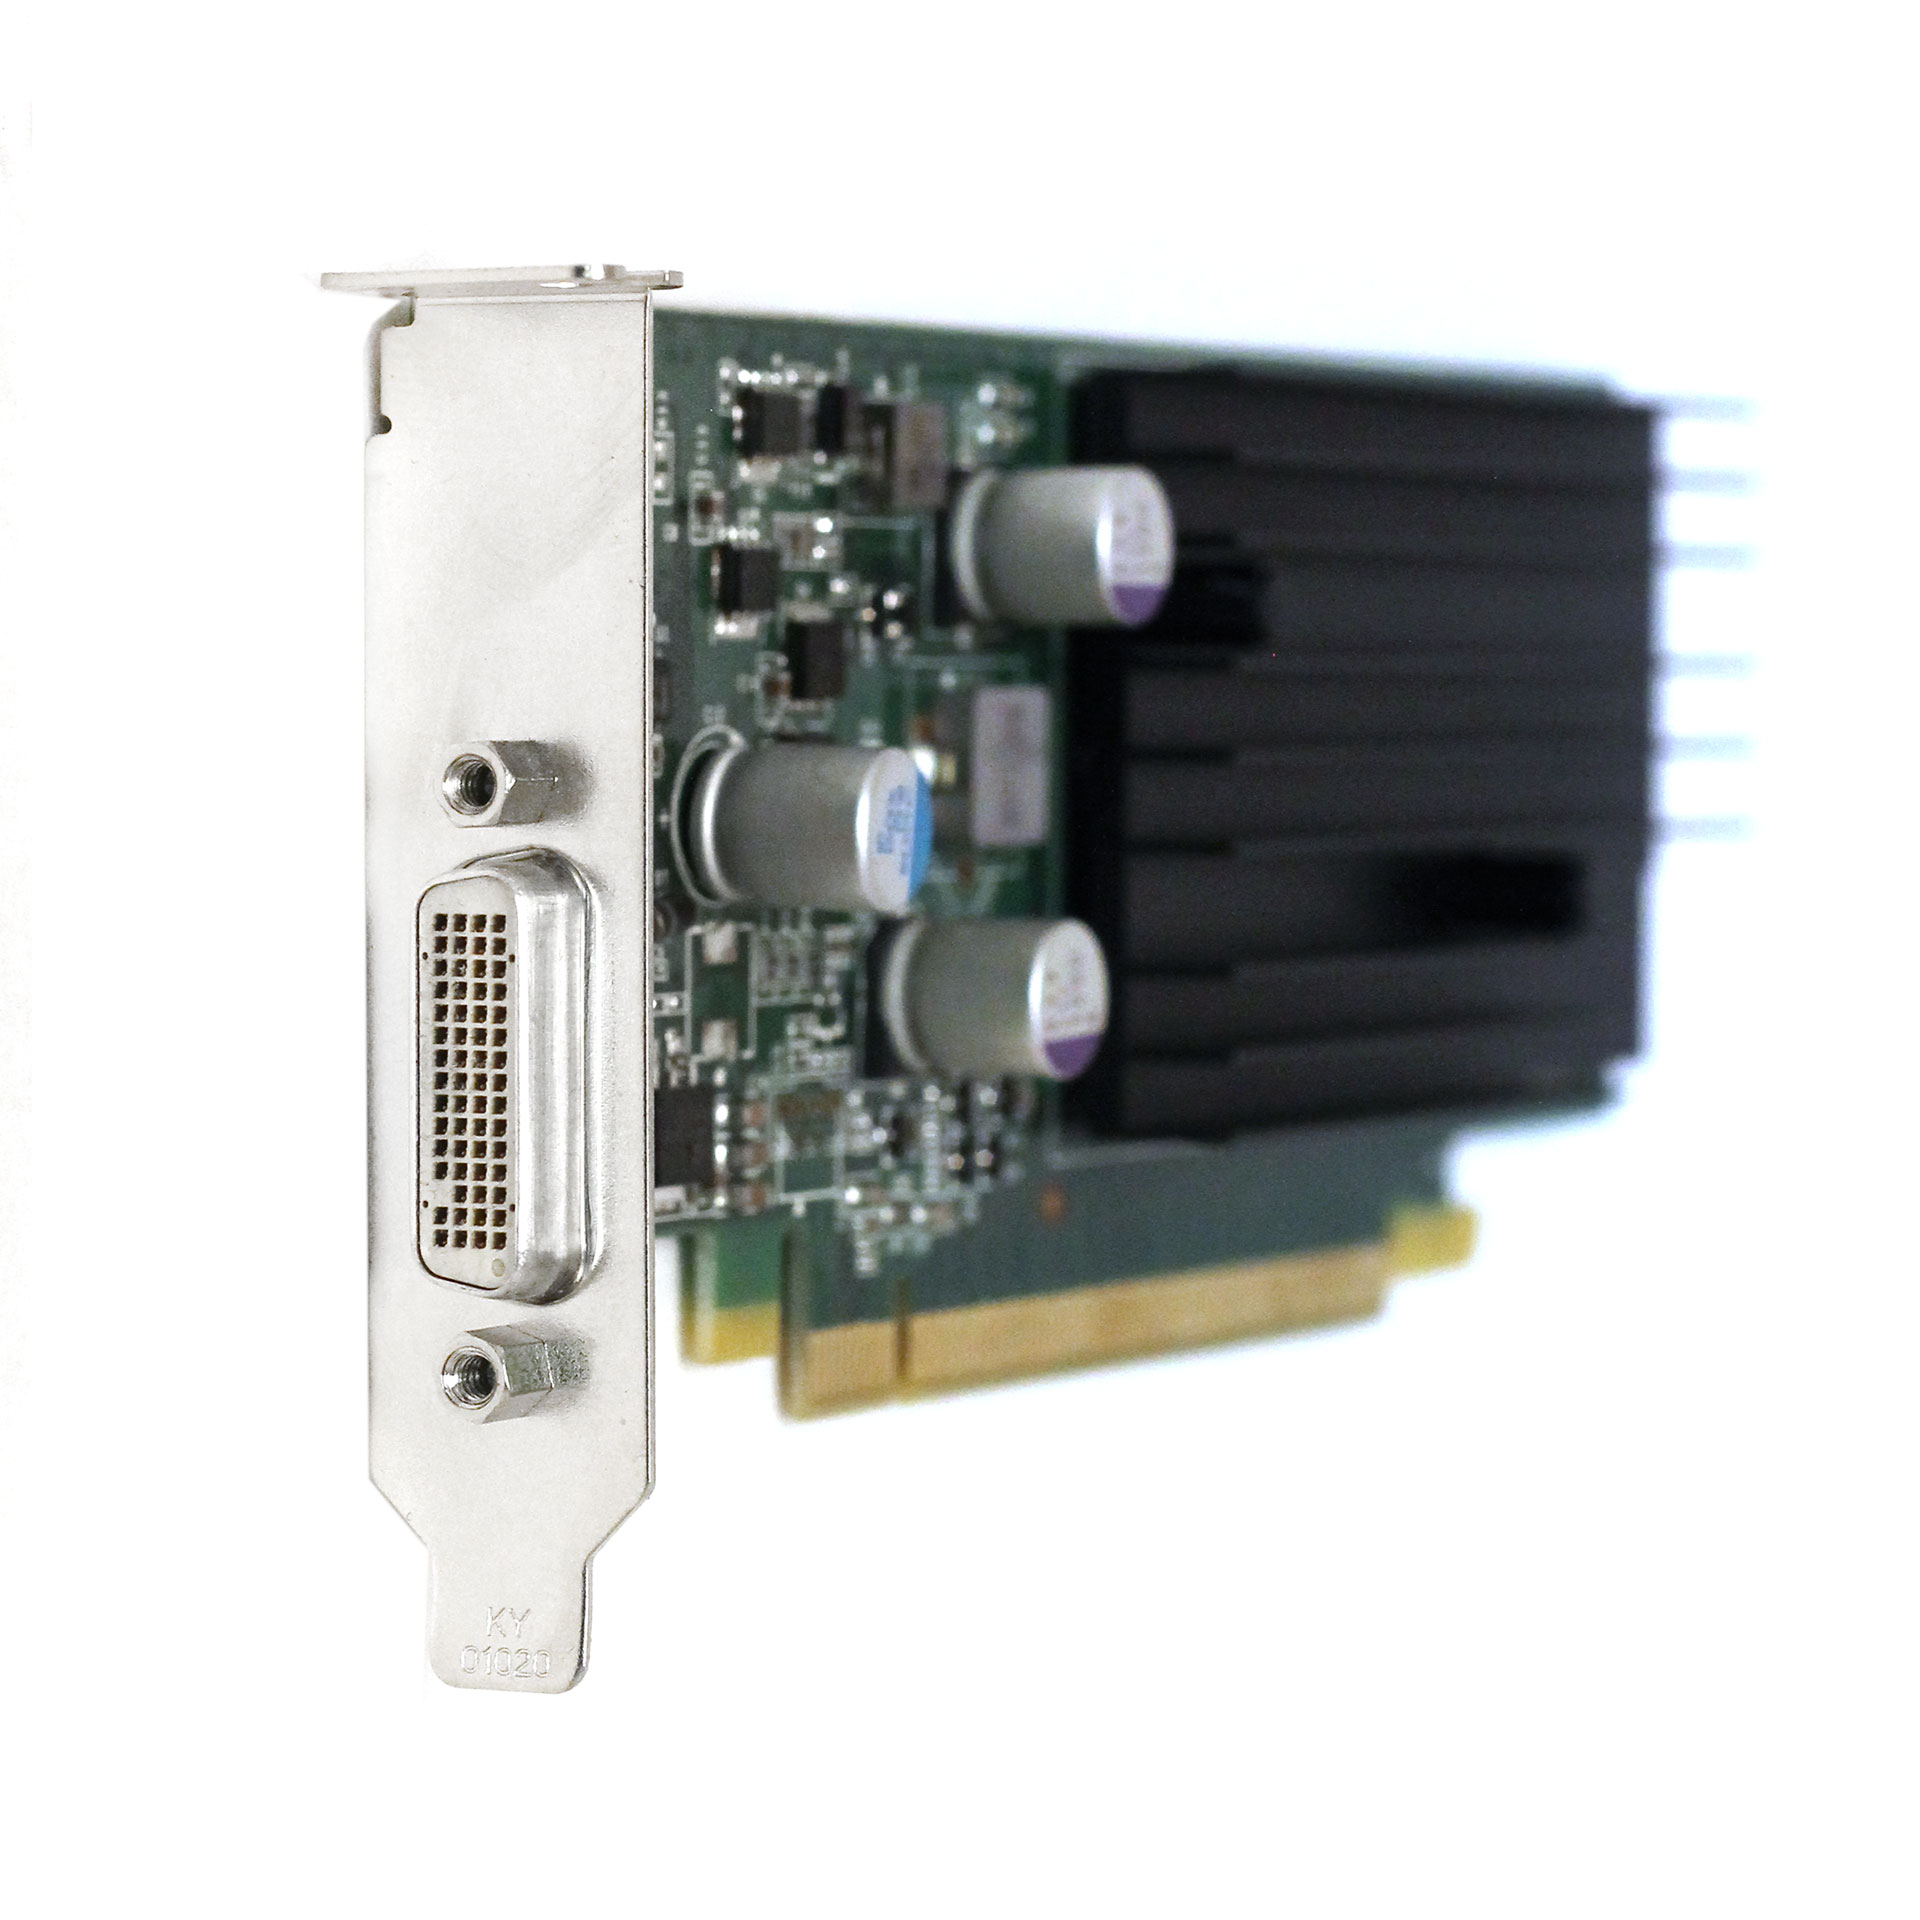 nVidia Quadro FX 370 Video Card PNY VCQFX370LP-PCIE-T